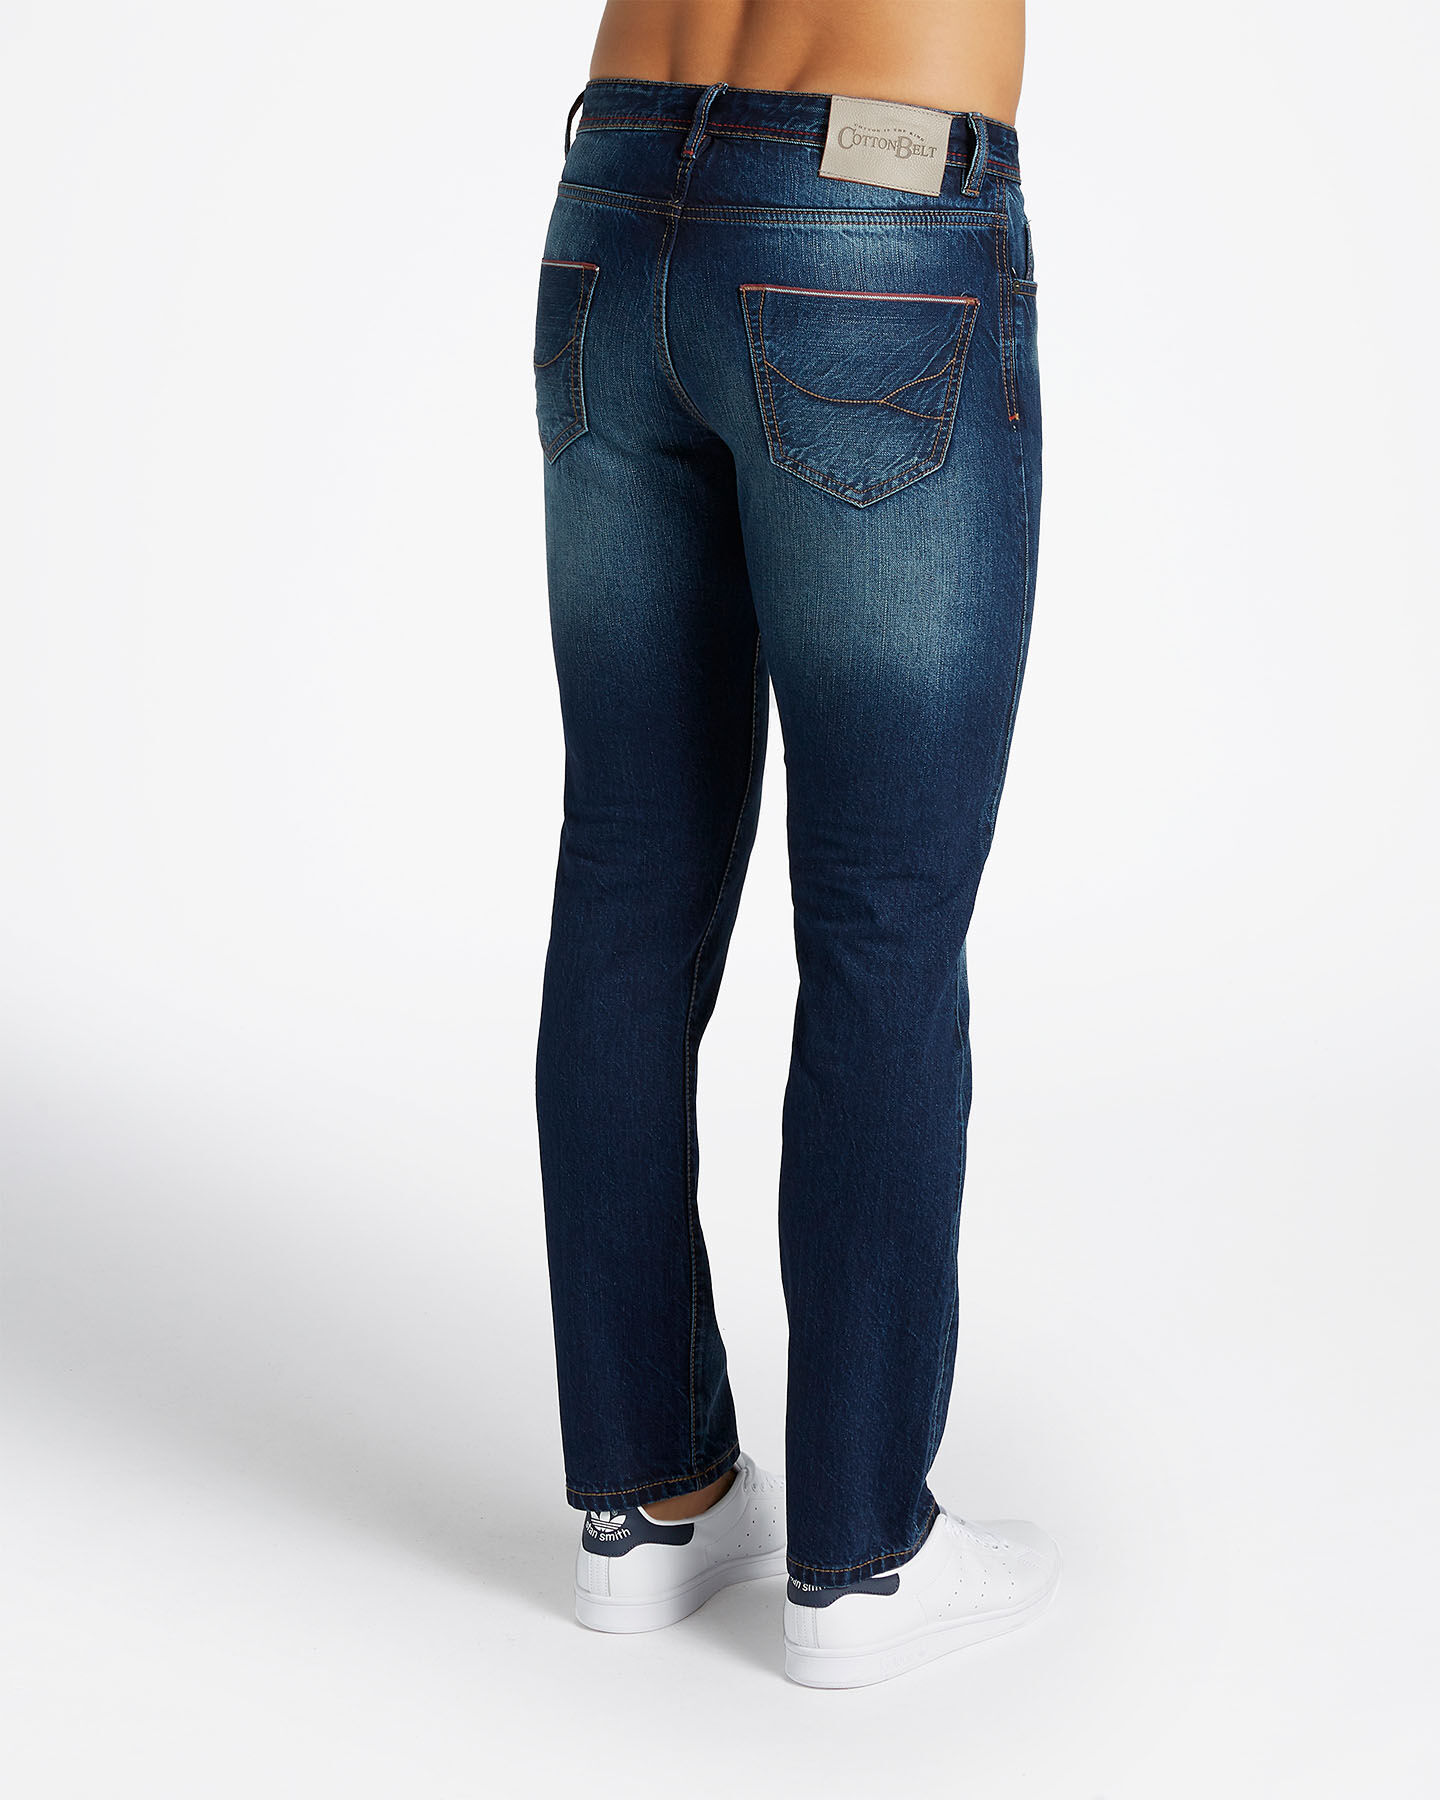  Jeans COTTON BELT WALDO MODERN REGULAR M S4070903|DD|30 scatto 1